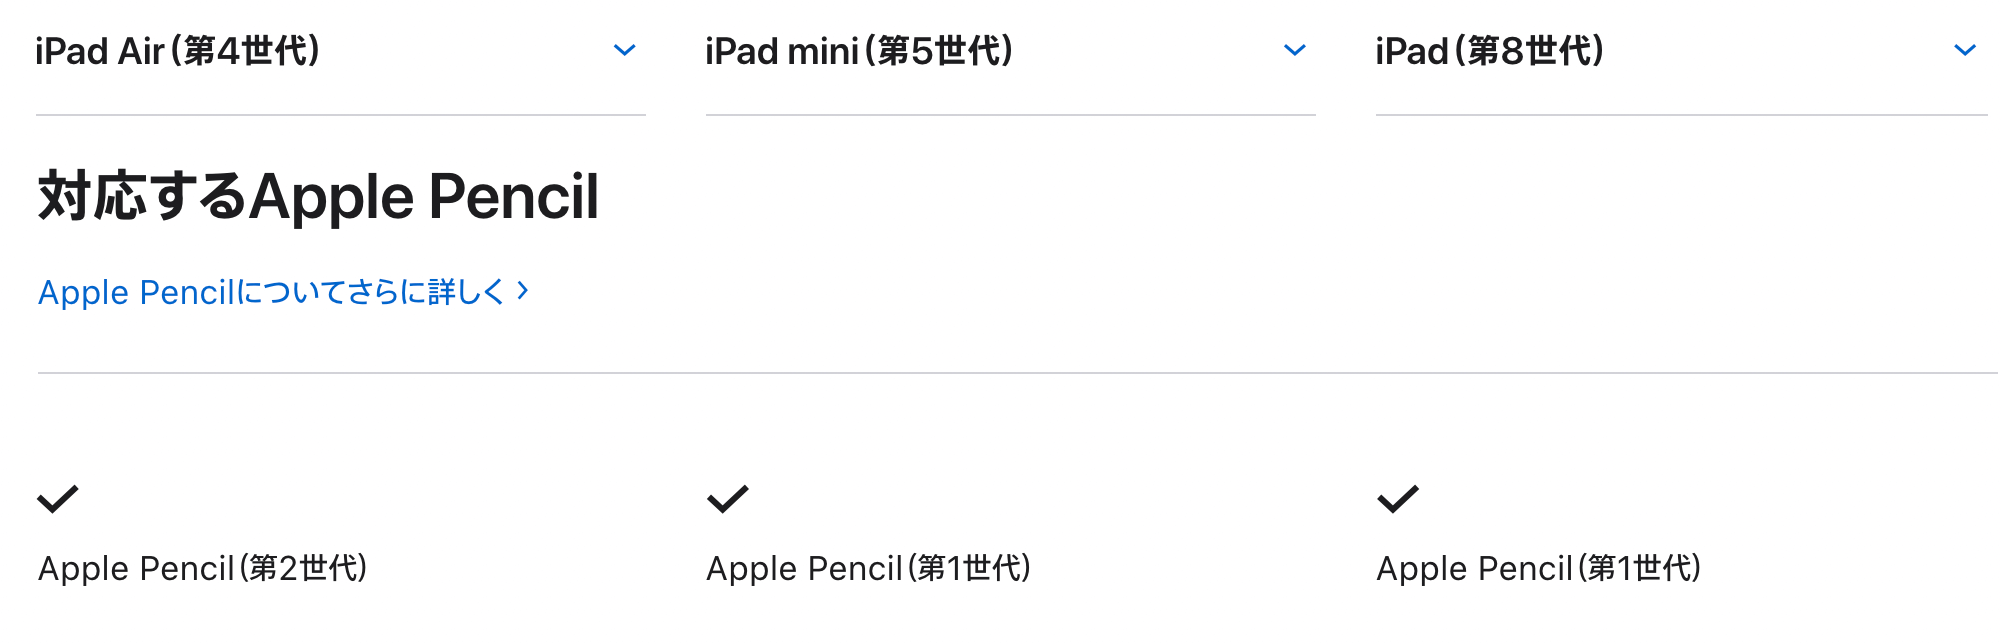 apple pencil対応